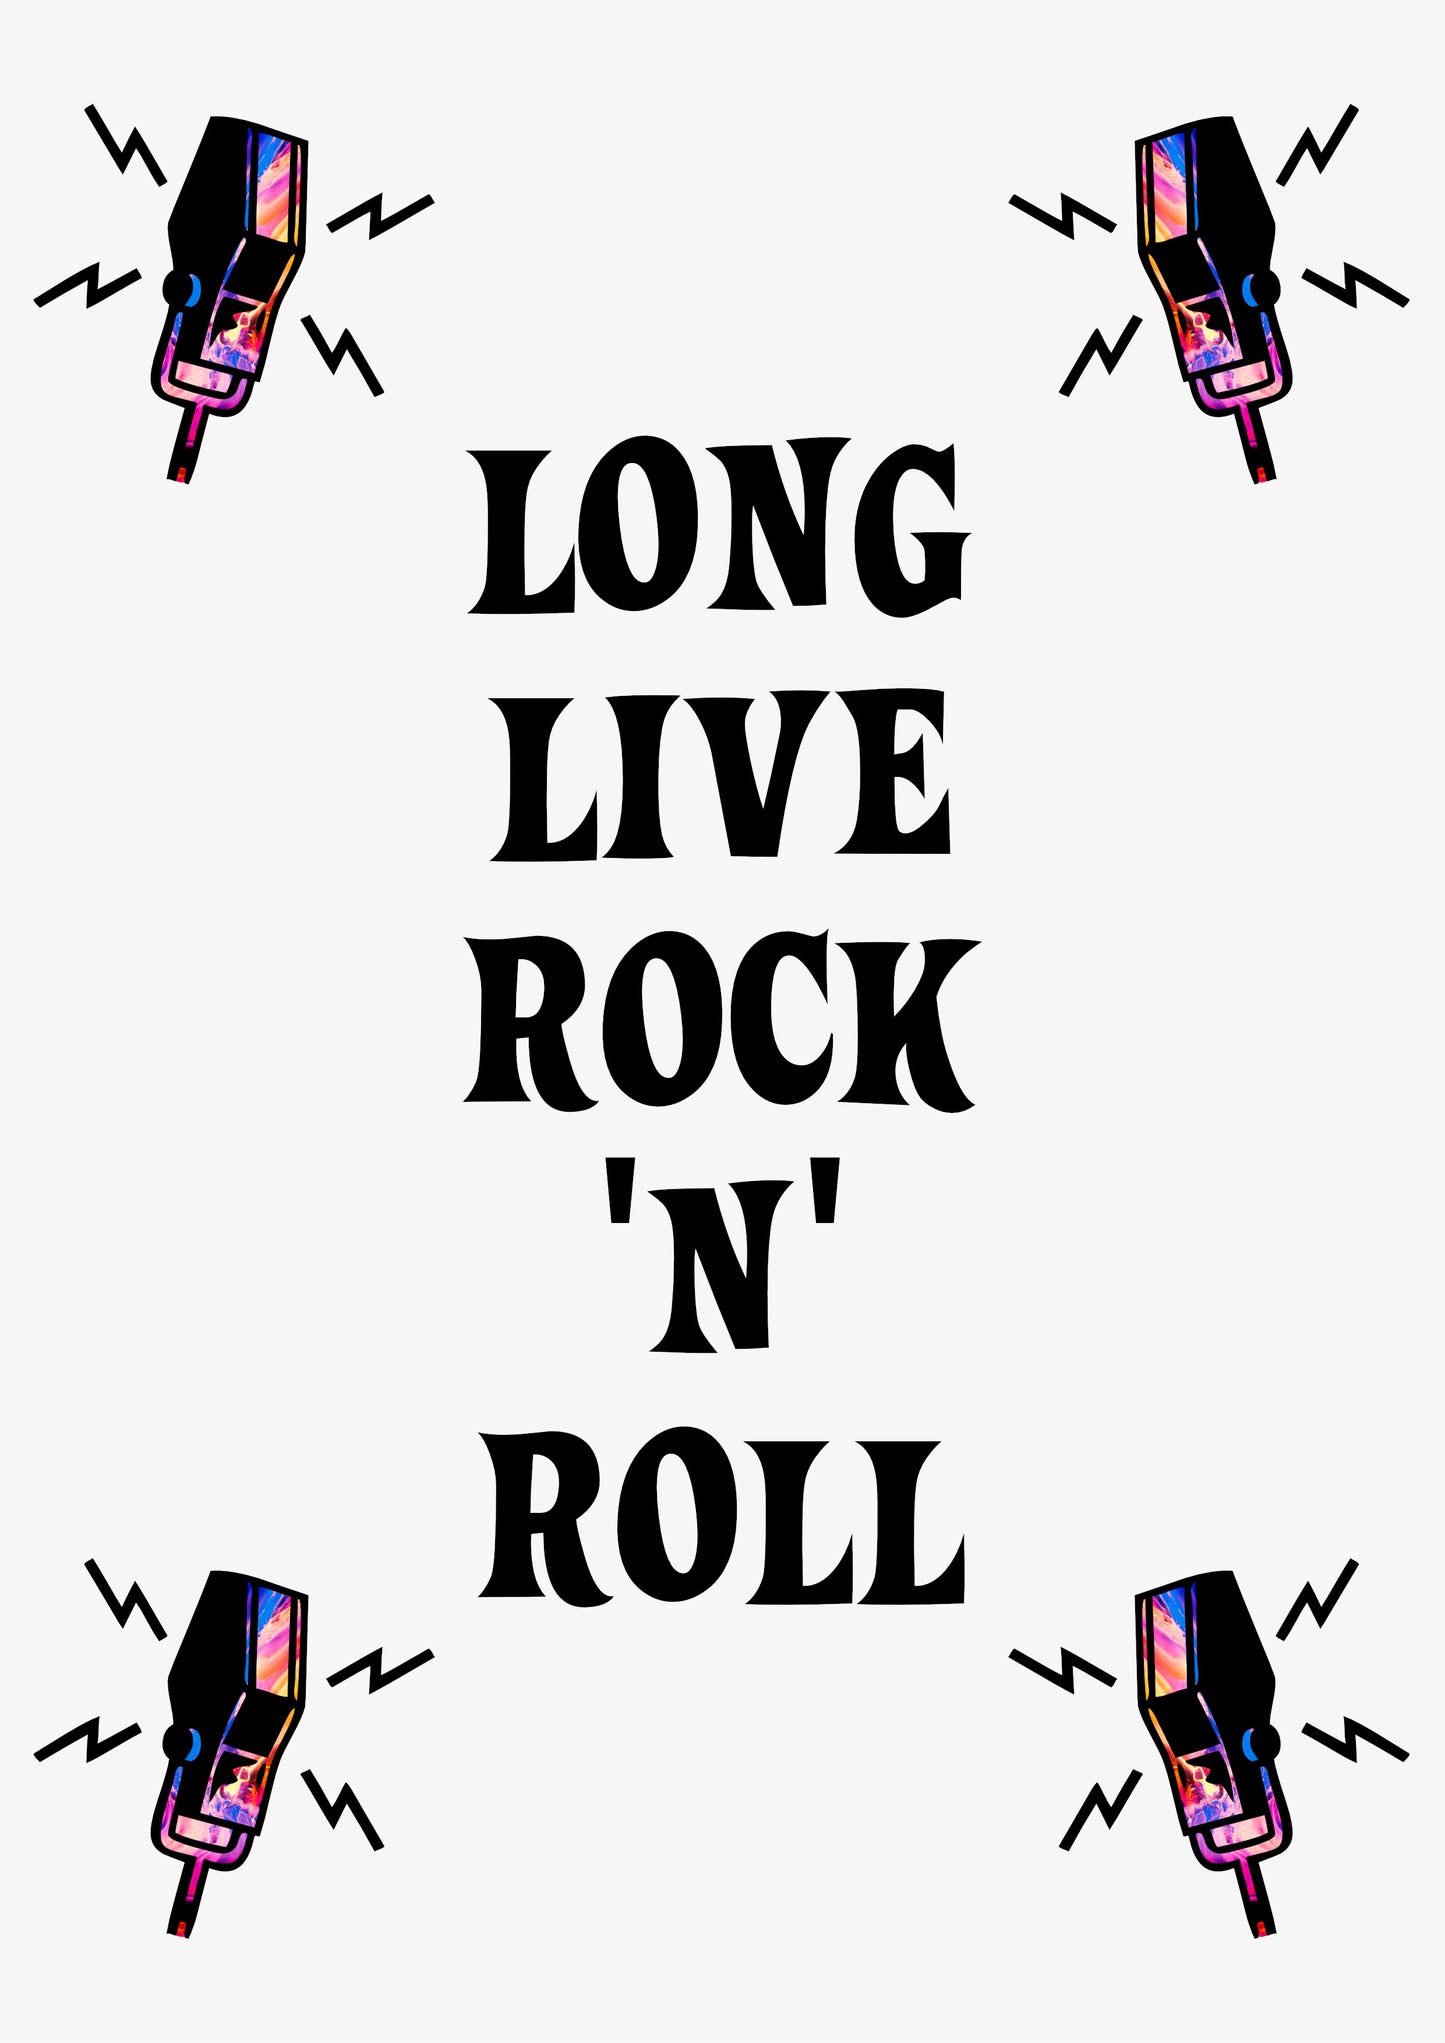 LONG LIVE ROCK 'N' ROLL